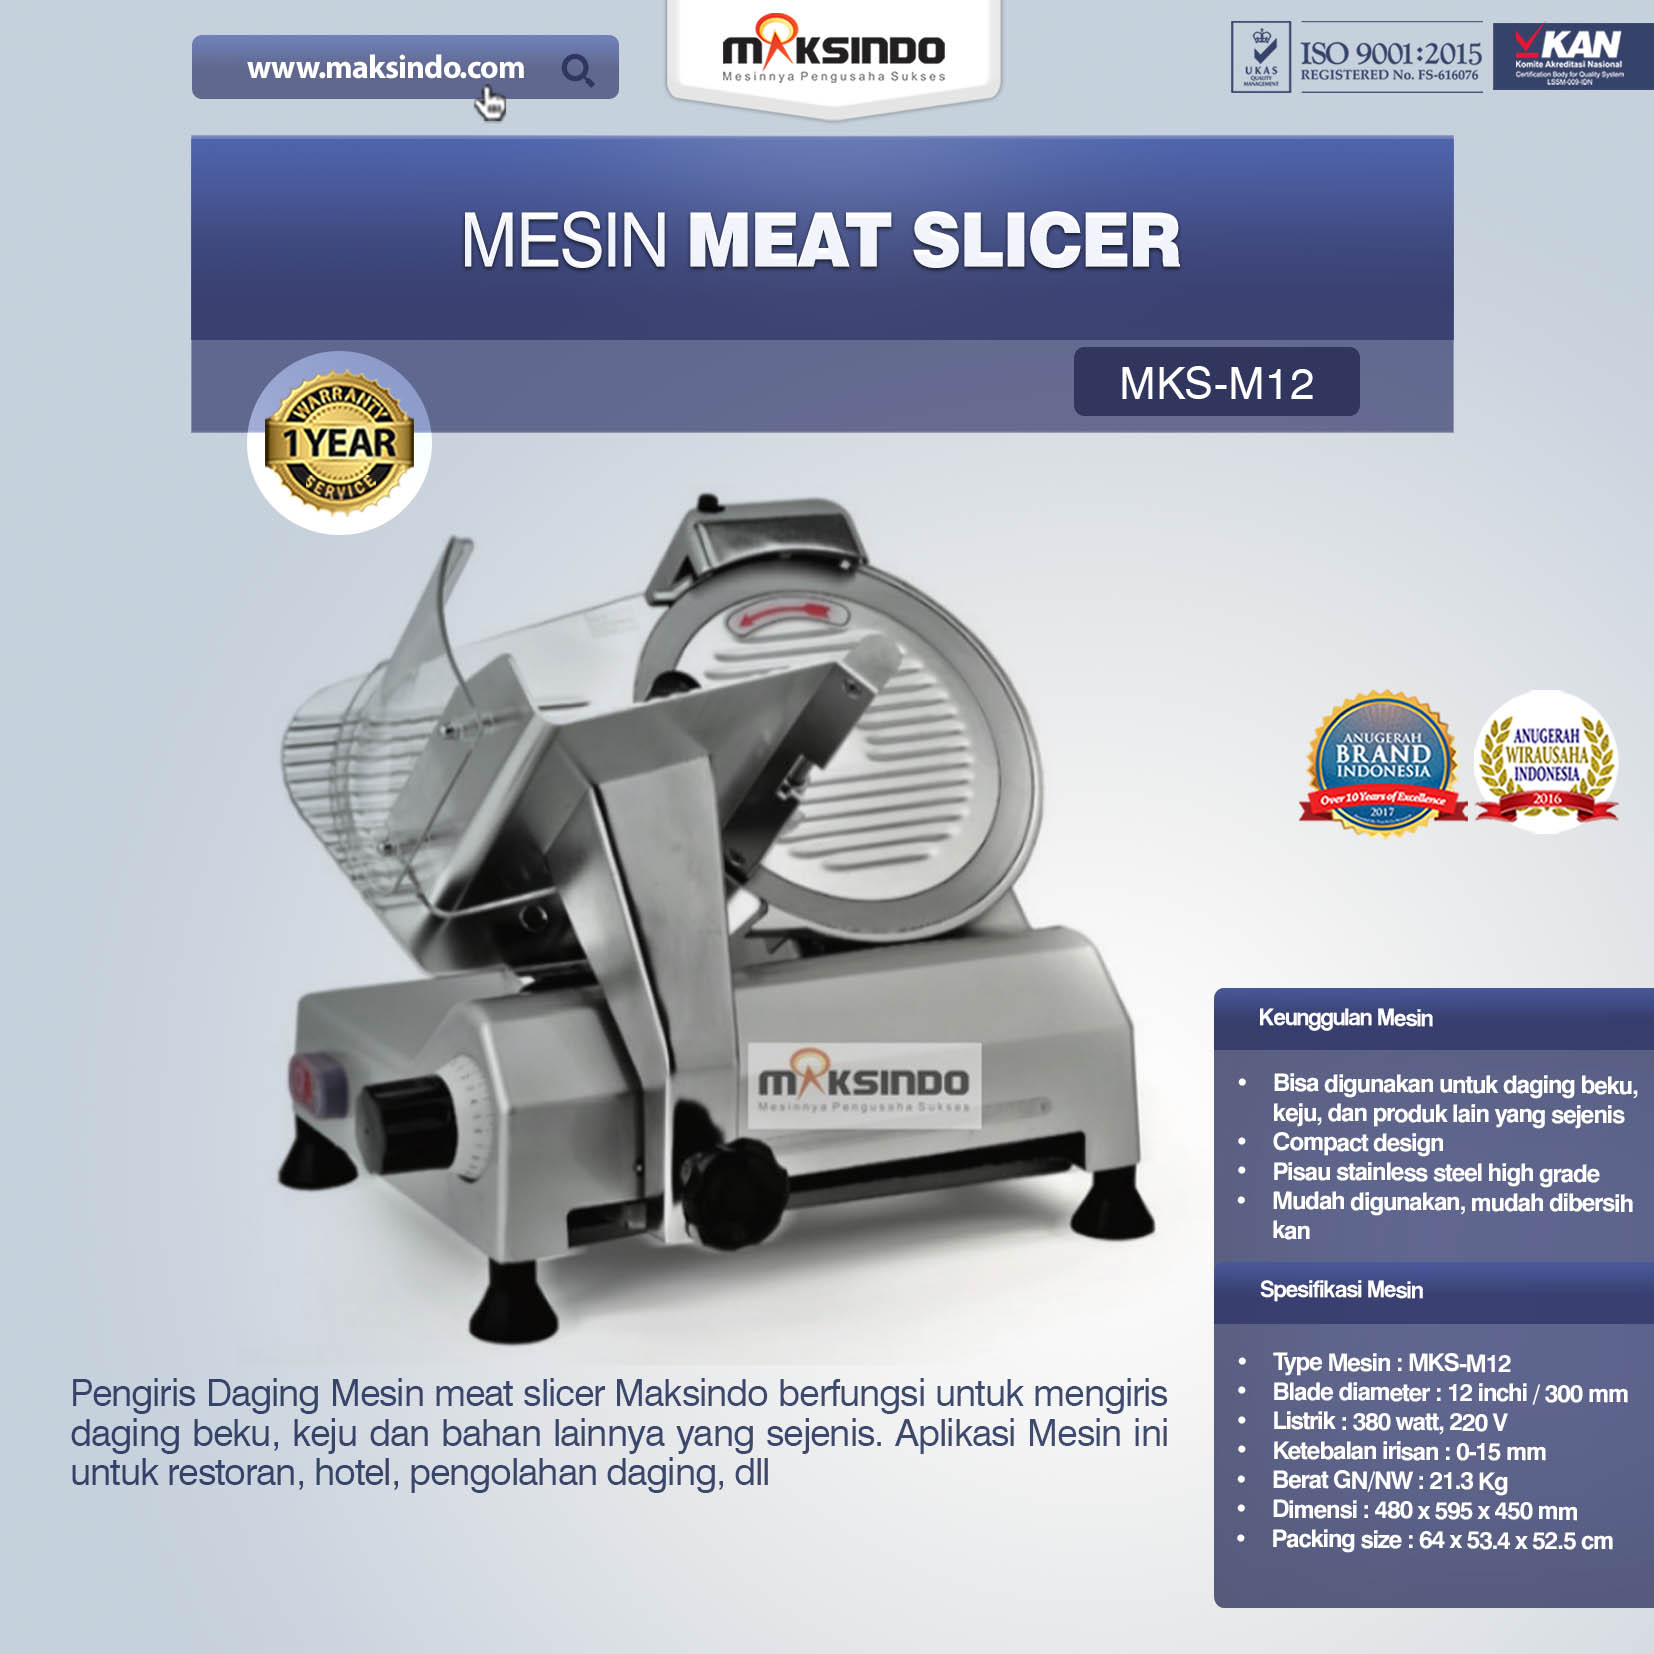 Jual Mesin Meat Slicer (MKS-M12) di Pekanbaru